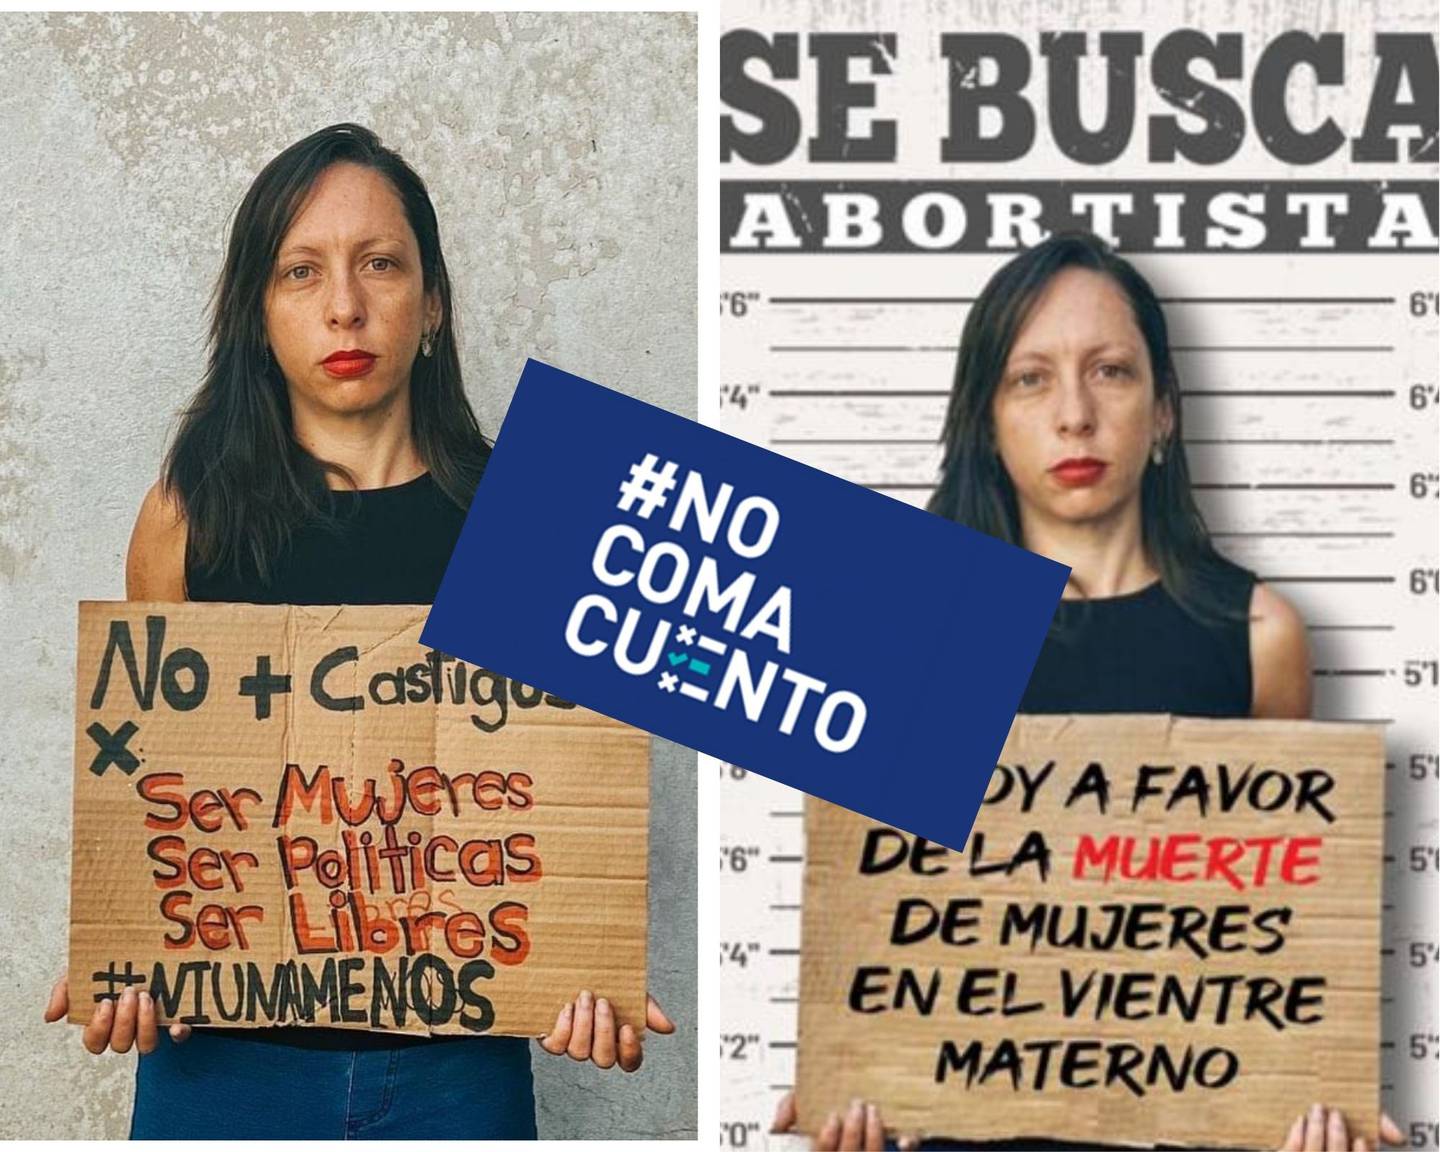 Una imagen publicada en redes sociales por Carolina Hidalgo, diputada del PAC, fue alterada con un texto y diseño falsos.